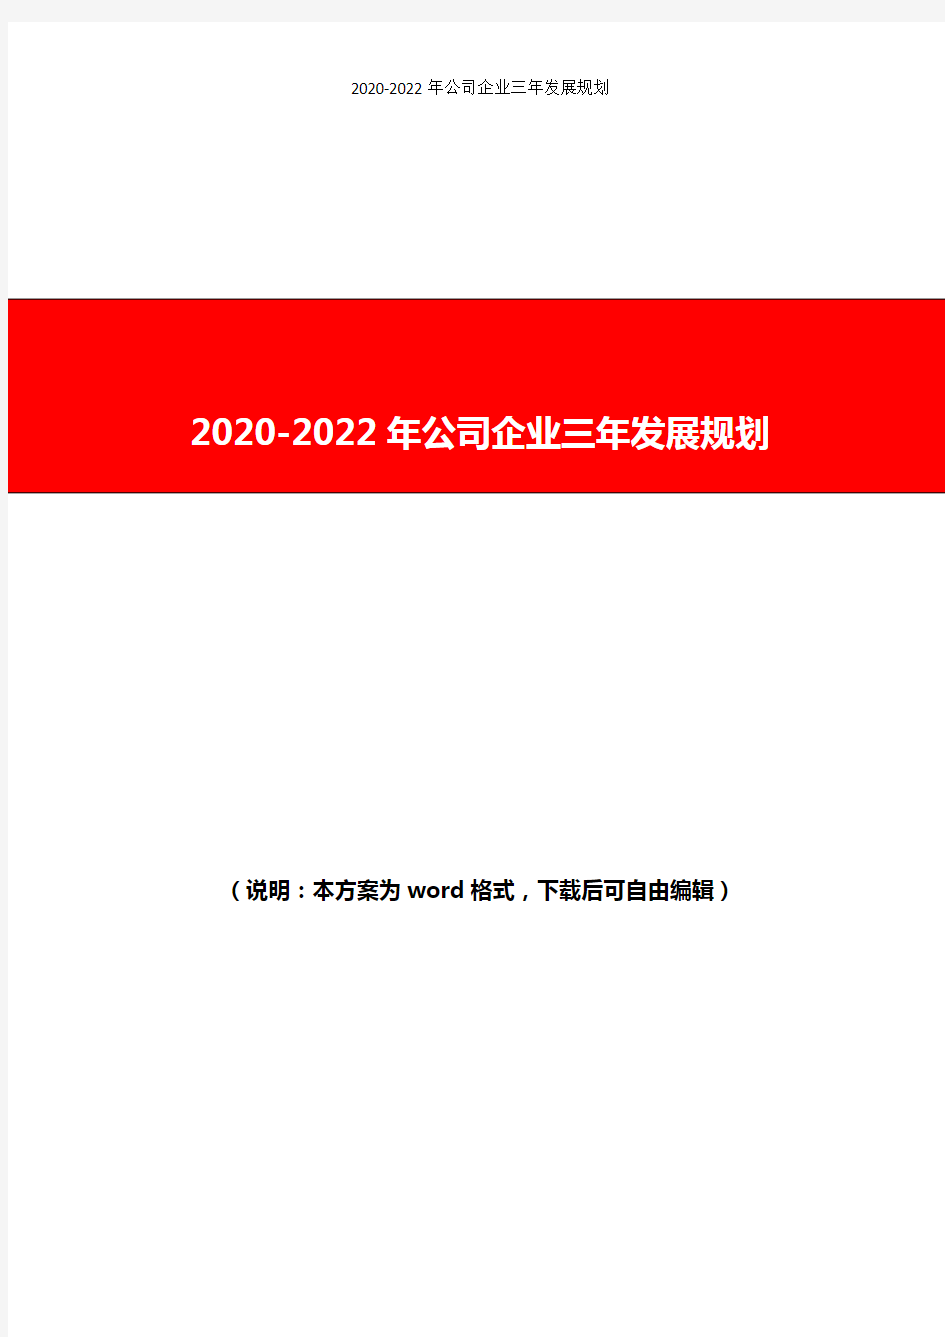 2020-2022年公司企业三年发展规划